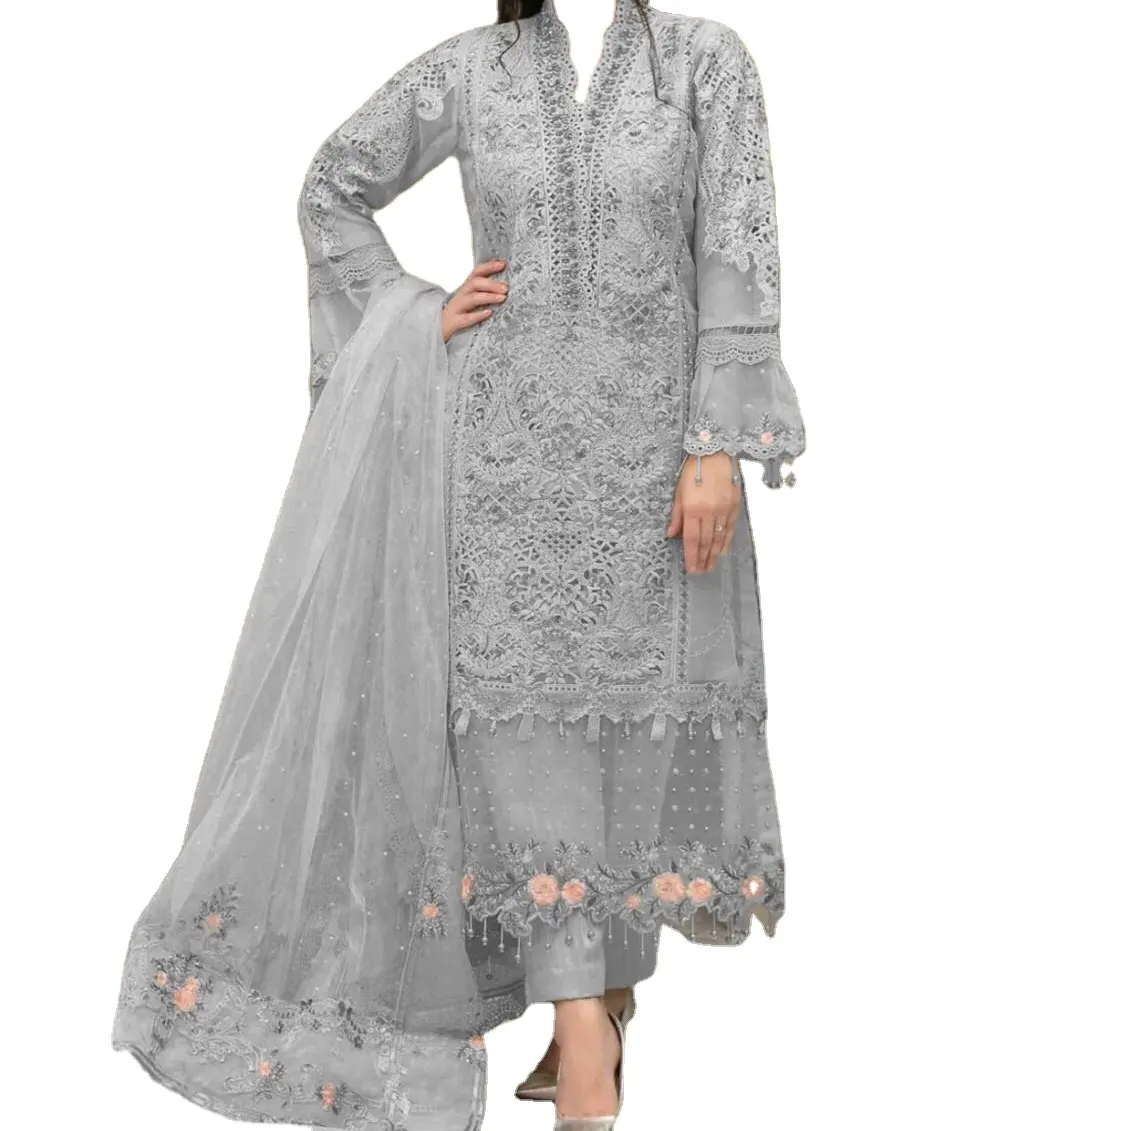 멋진 인도 스타일 lehnga choli shalwar kameez와 frocks 여성을위한 디자인 최고 품질의 패션웨어